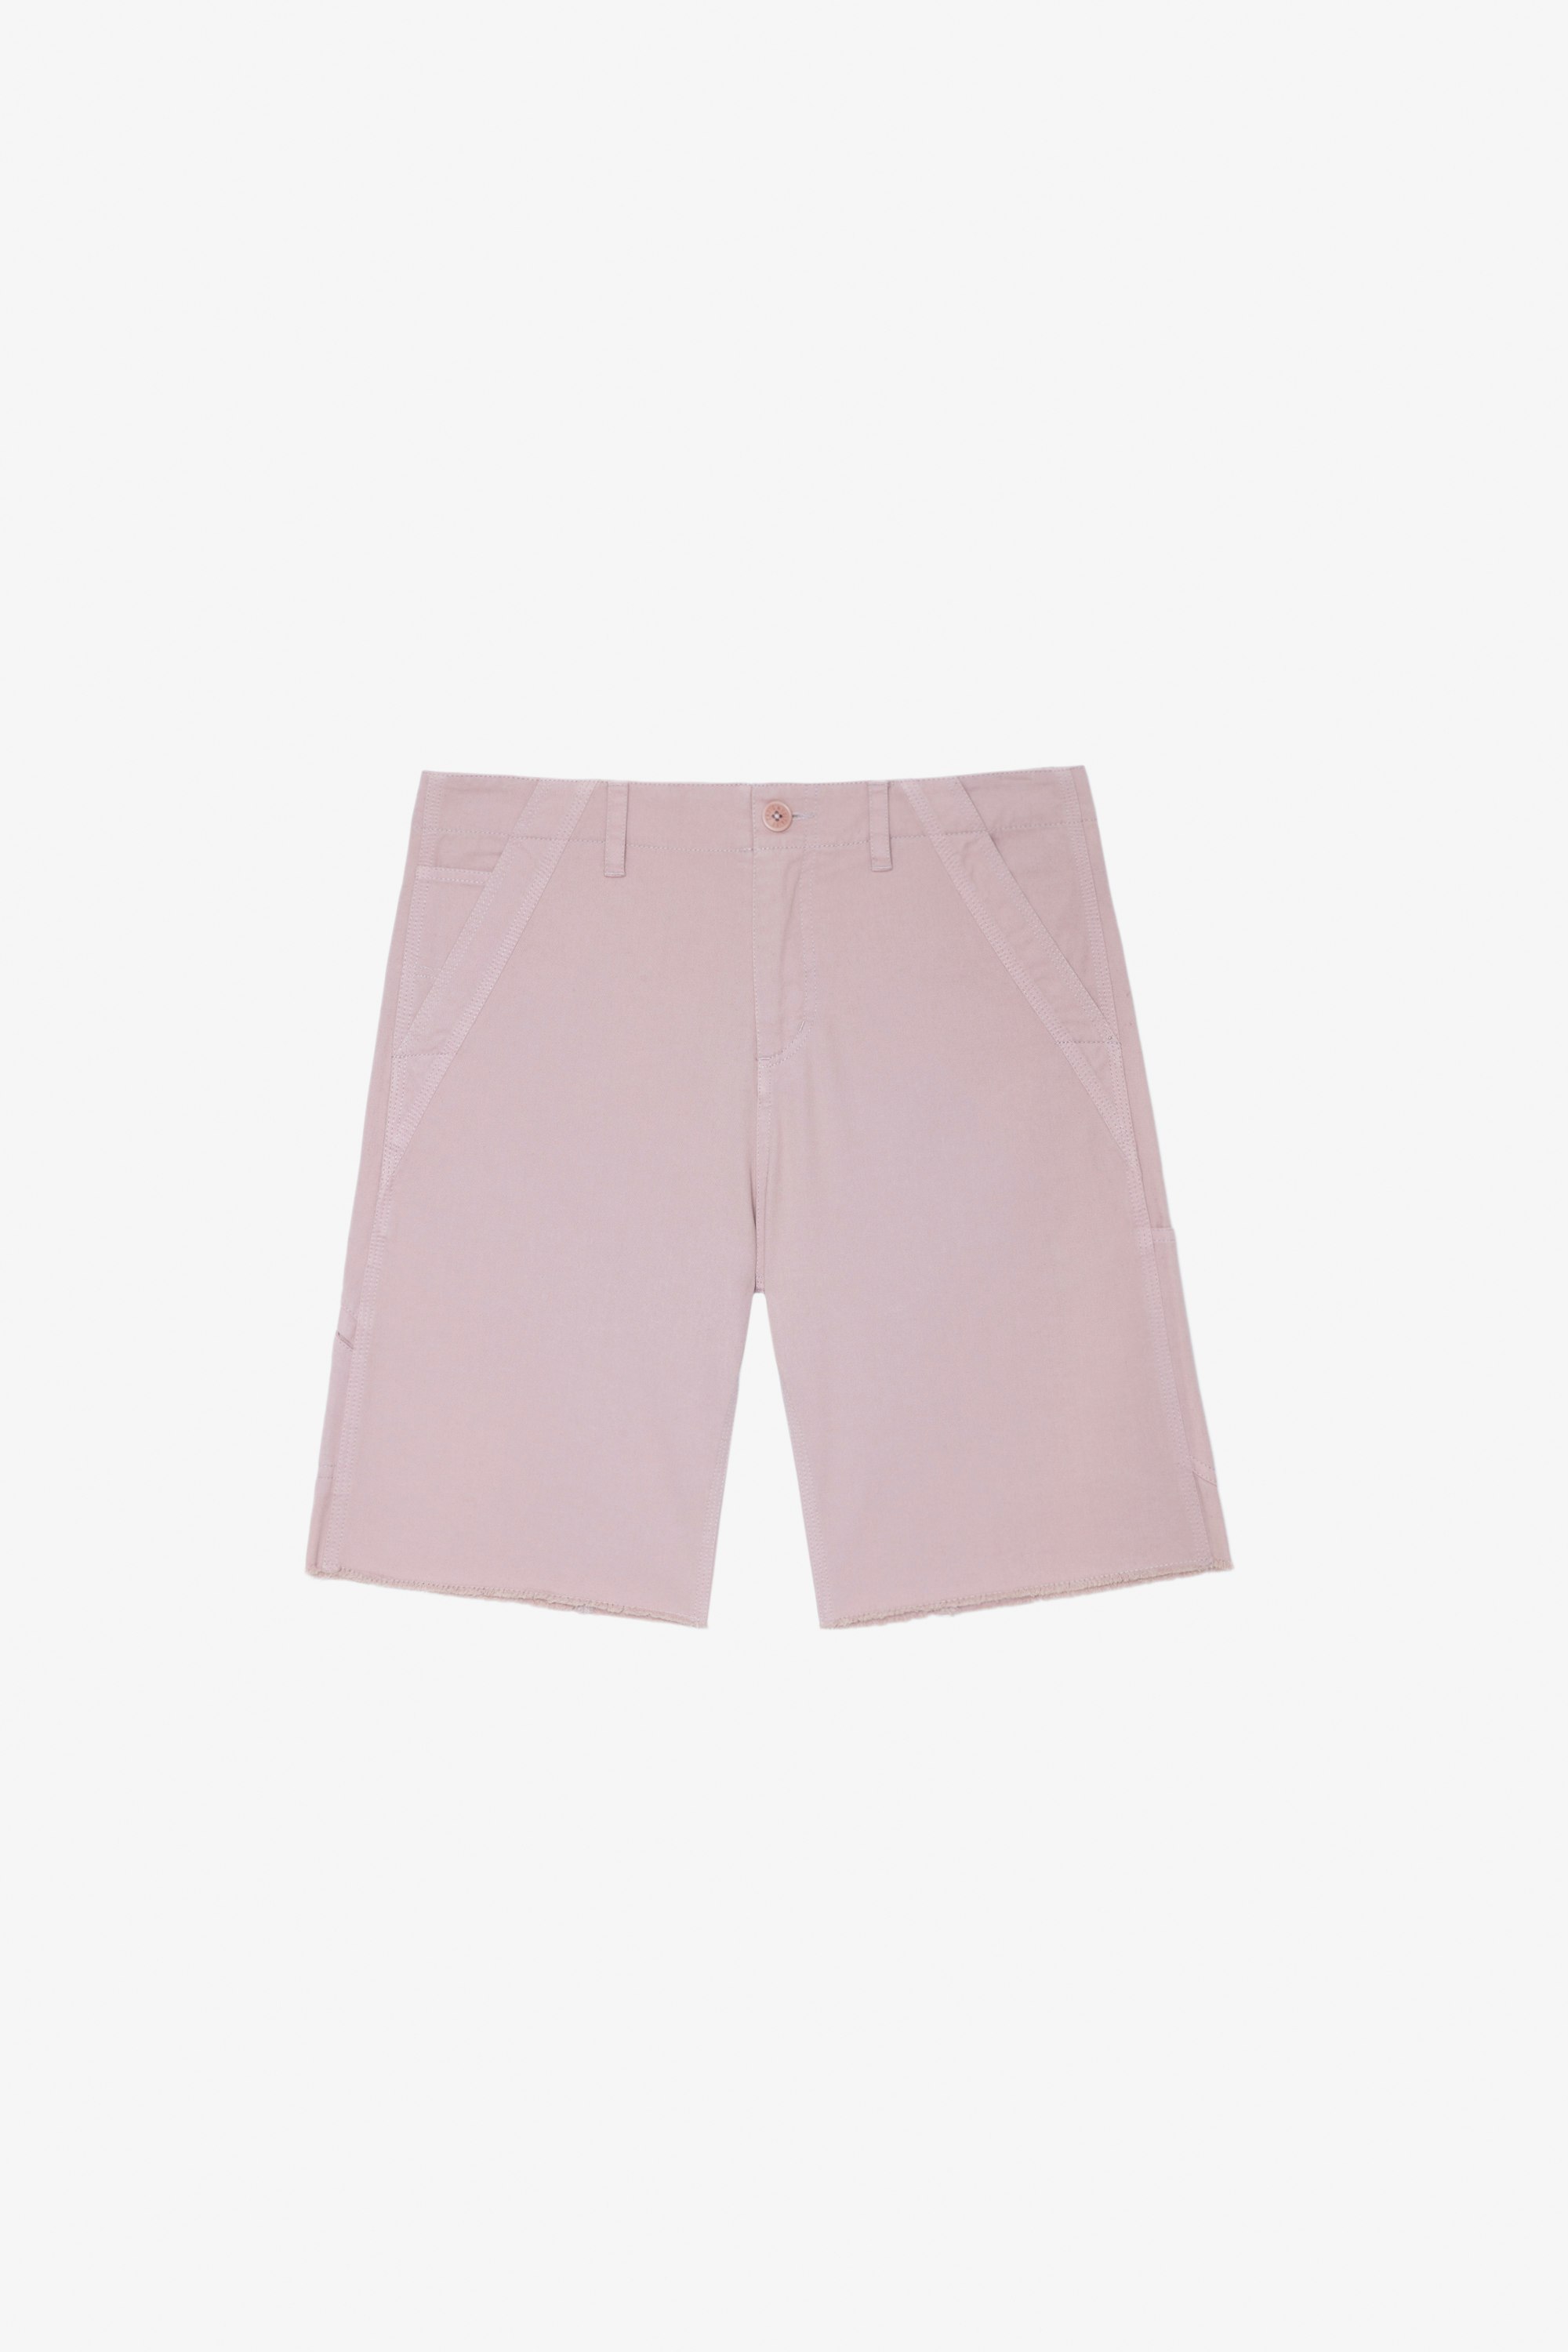 Parks Shorts Men's mauve cotton cargo shorts with multiple pockets